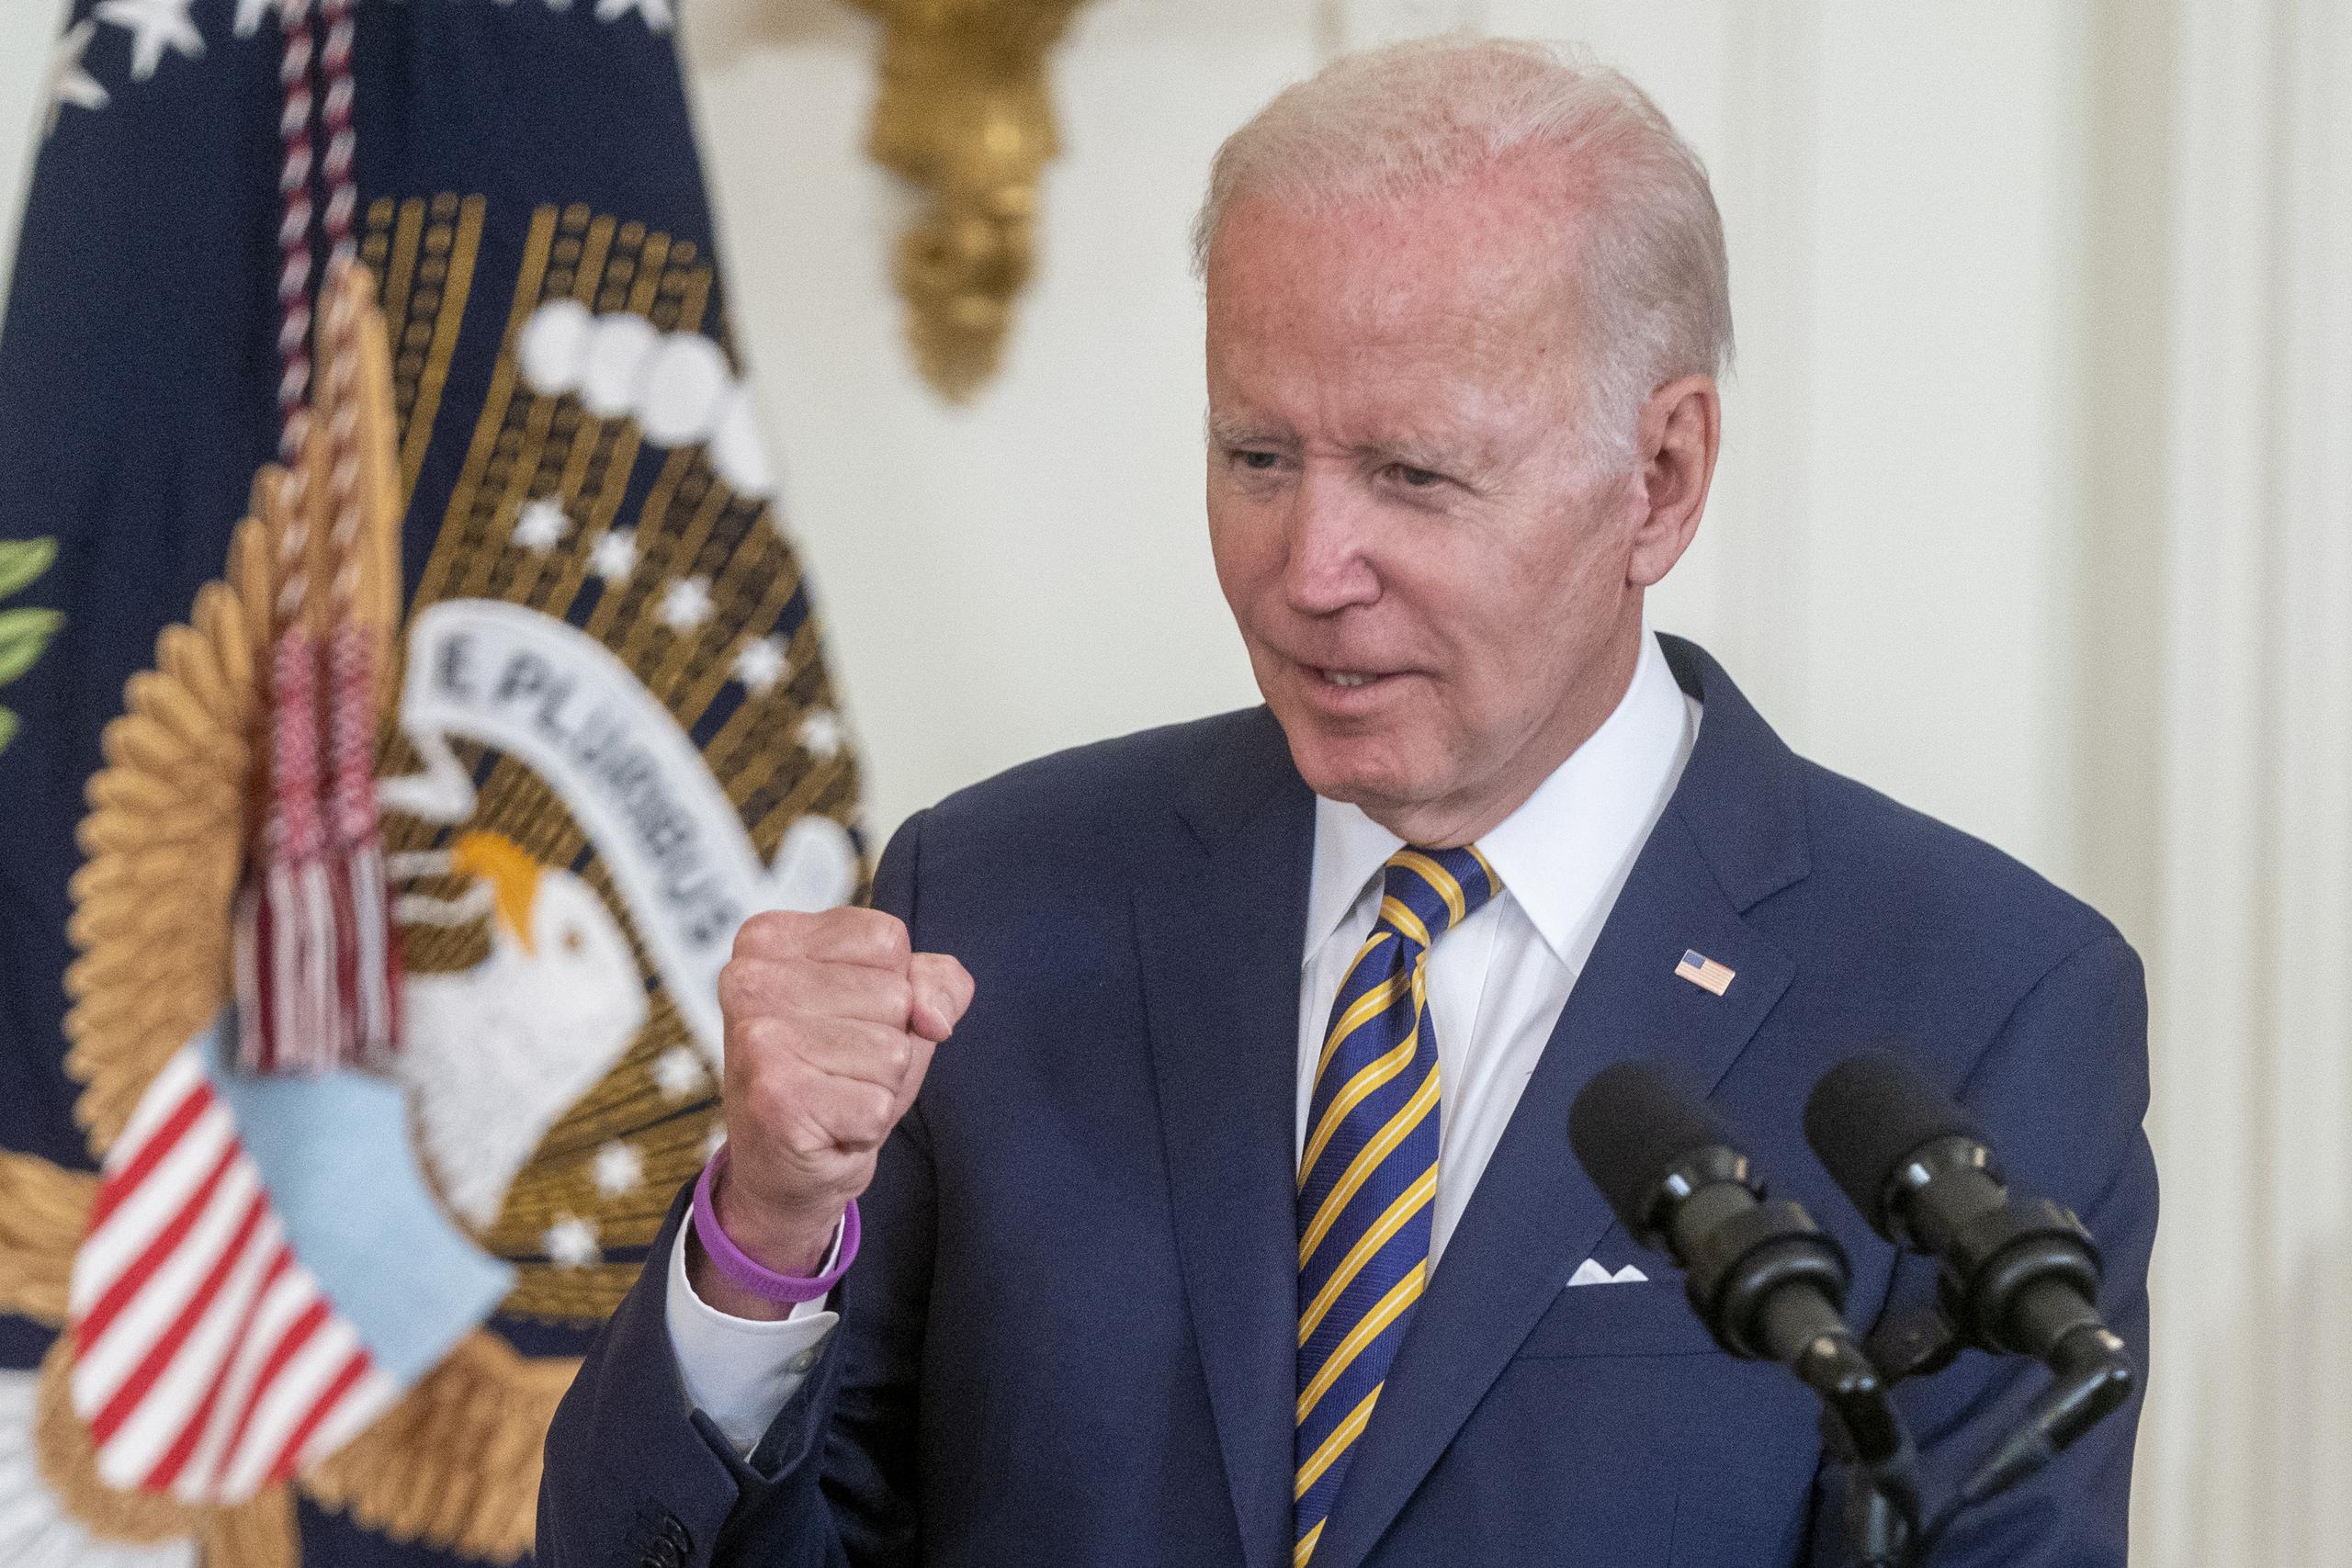 El presidente de Estados Unidos, Joe Biden, estaría visitando primero el estado de Florida, quien sufre el embate del huracán Ian, antes de llegar a la Isla.